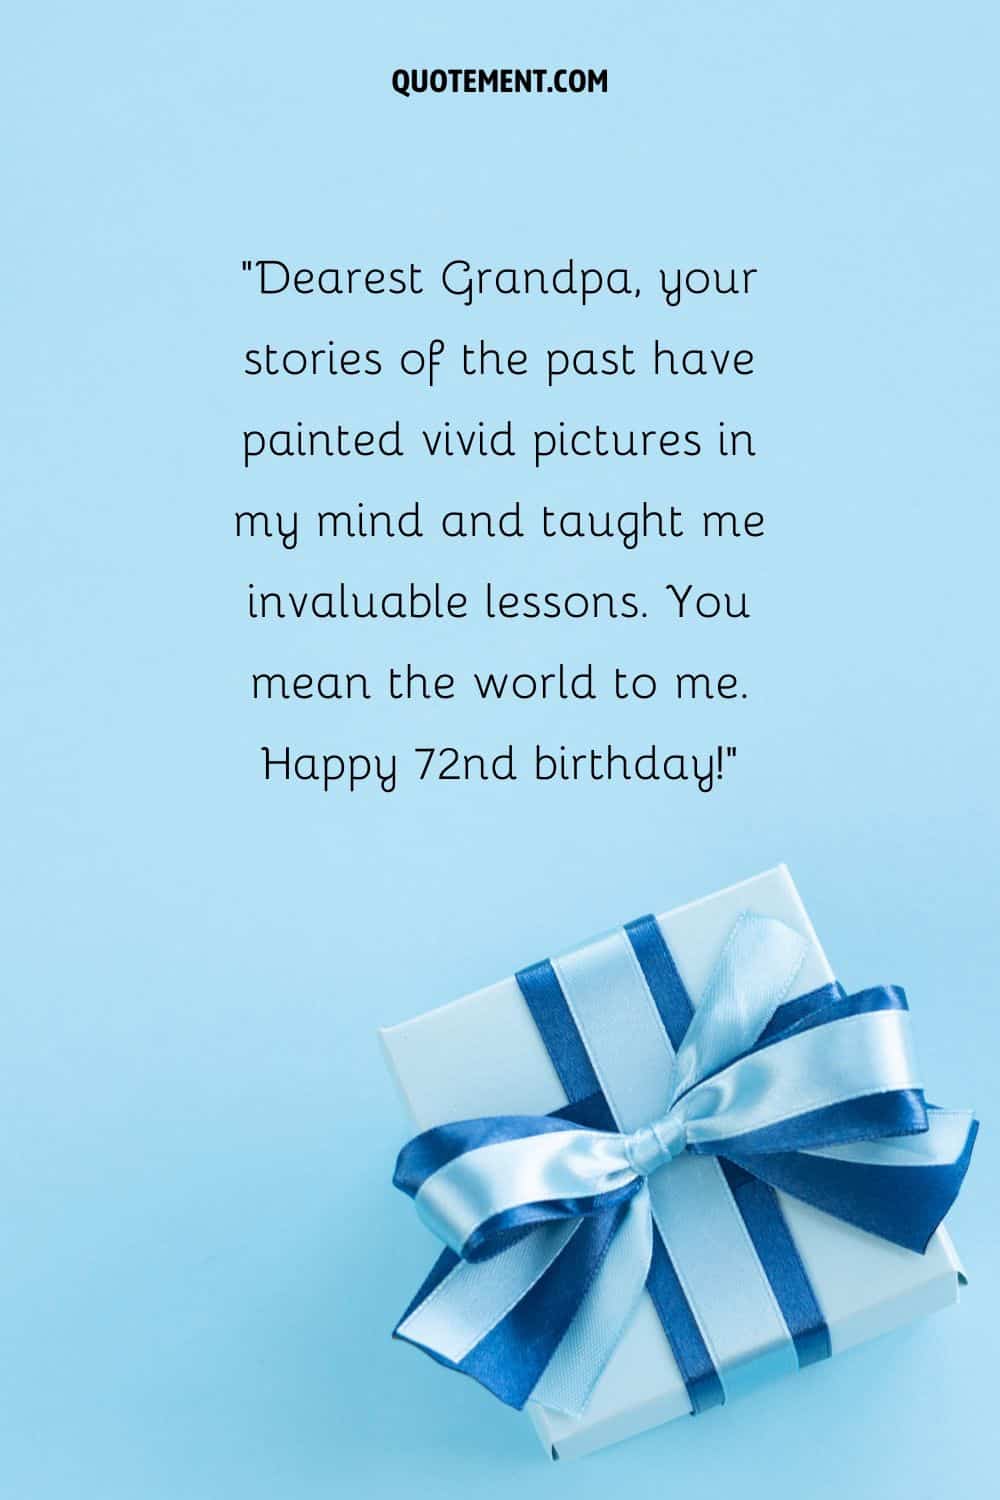 birthday gift representing happy birthday wish for grandpa clocking 72